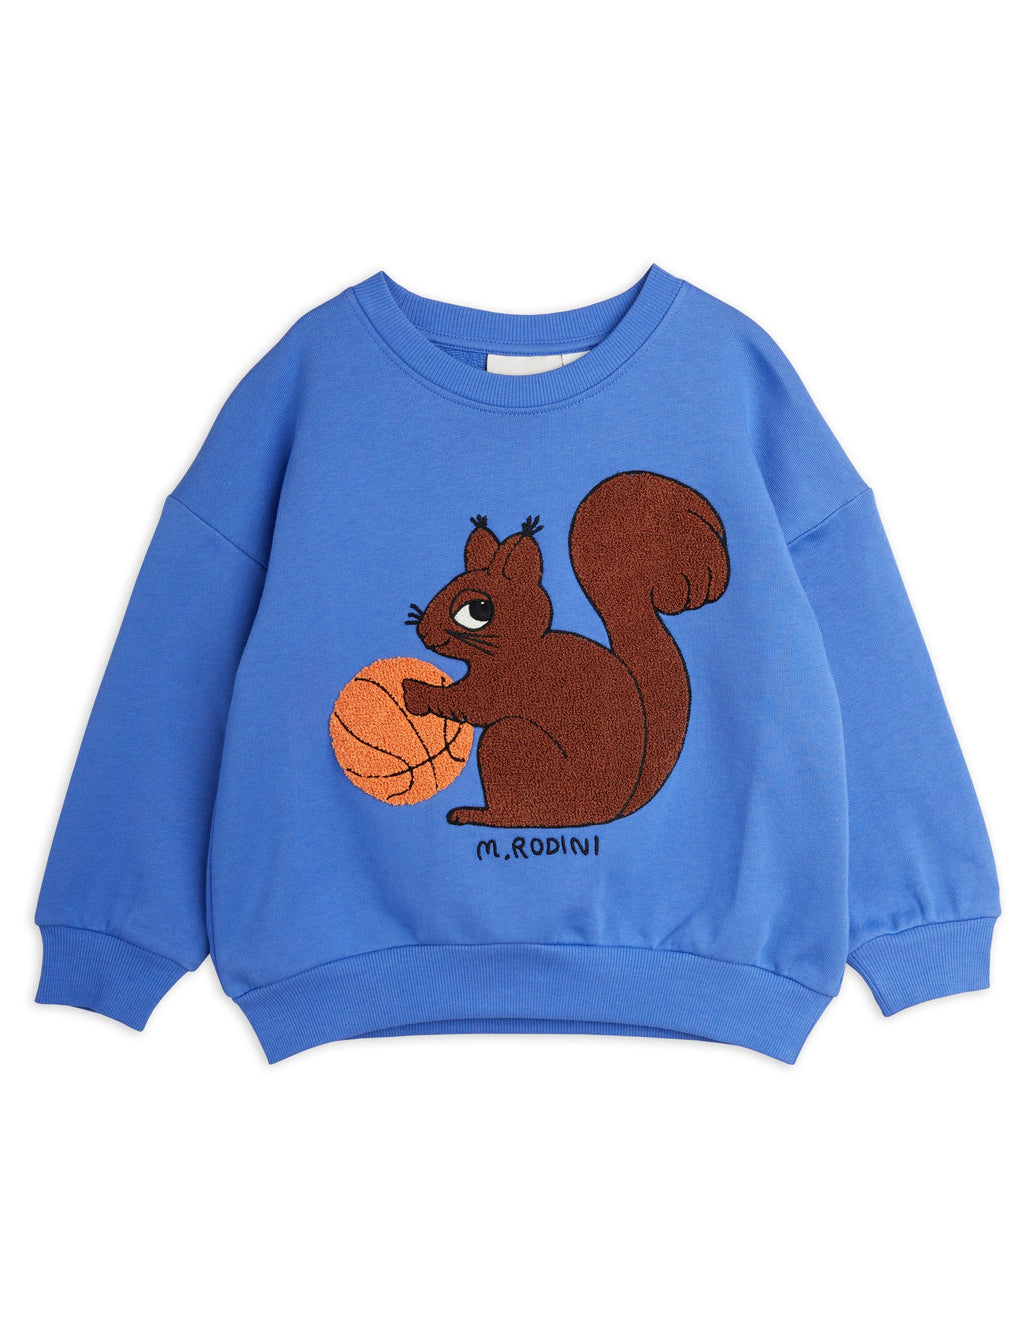 Squirrels Embroidered Sweatshirt / Blue